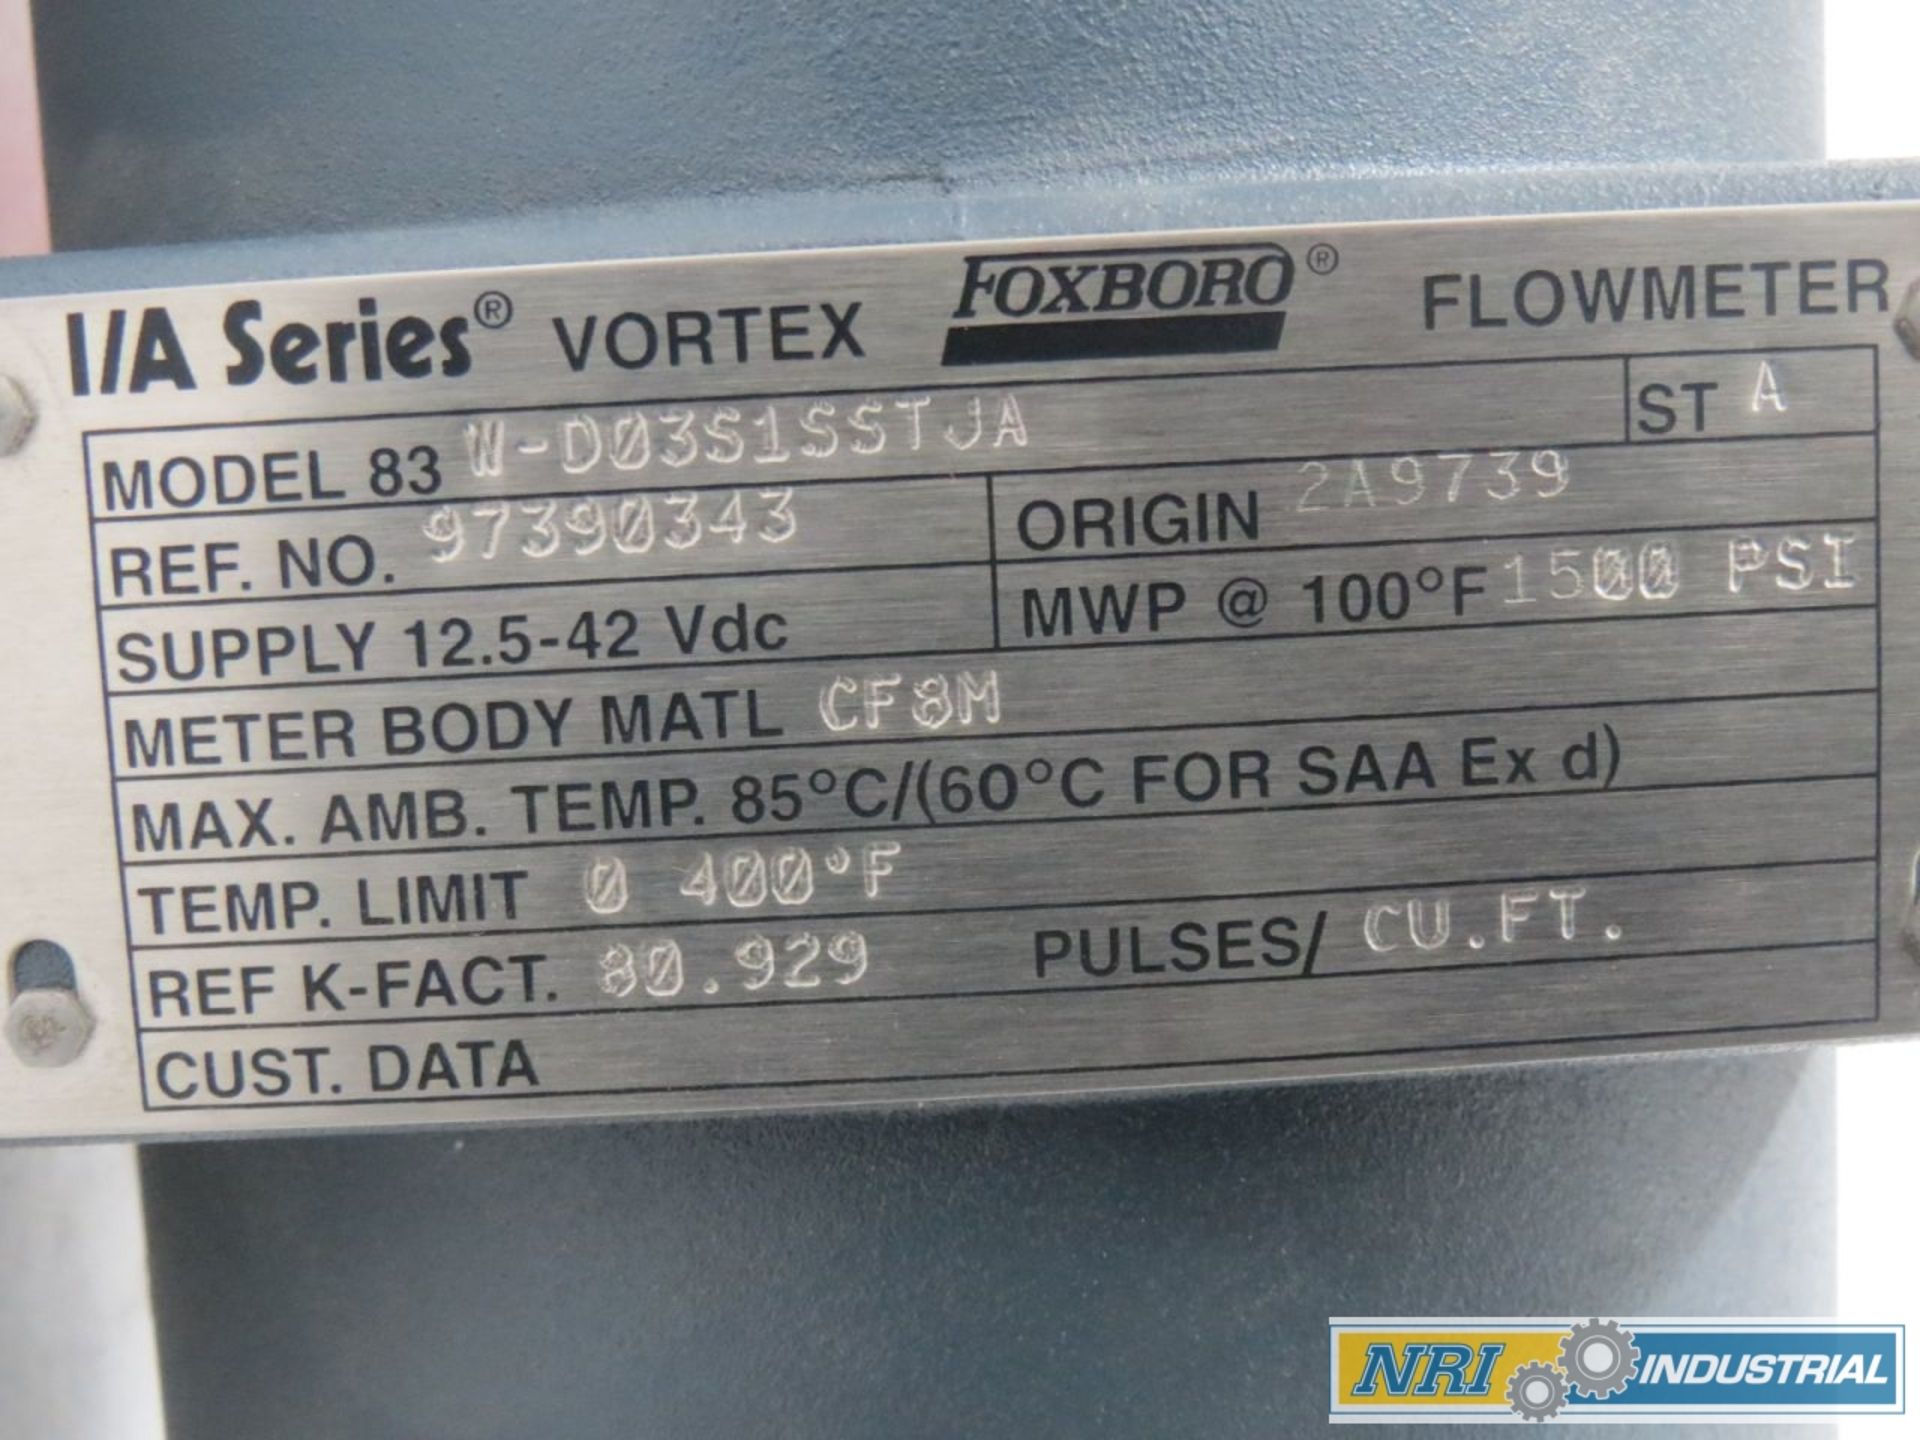 FOXBORO 83W-D03S1SSTJA I/A SERIES VORTEX 1/2 IN FLOWMETER - Image 4 of 4